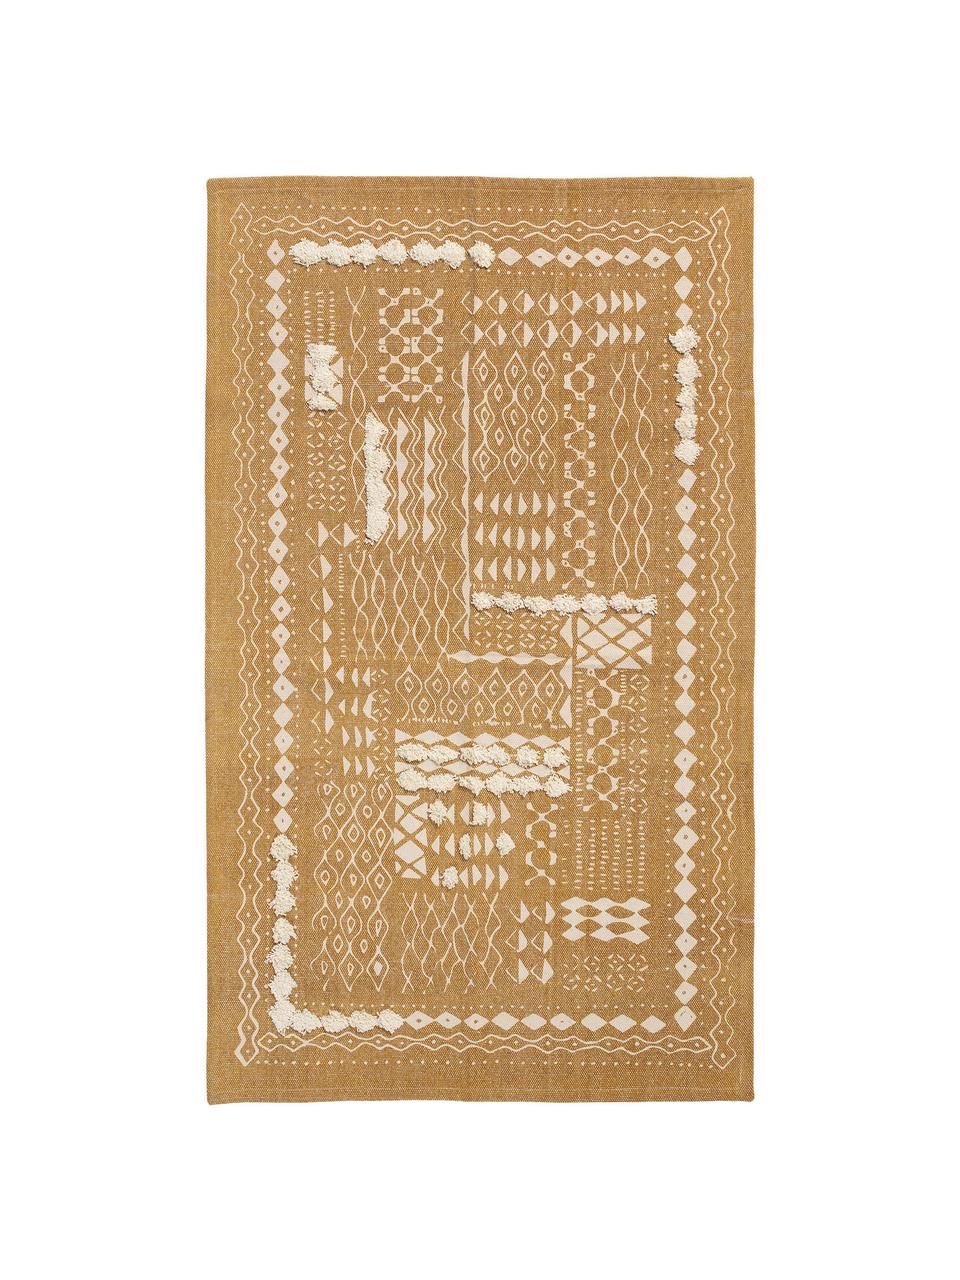 Bavlněný koberec s různou výškou vzoru v boho stylu Boa, Žlutá, bílá